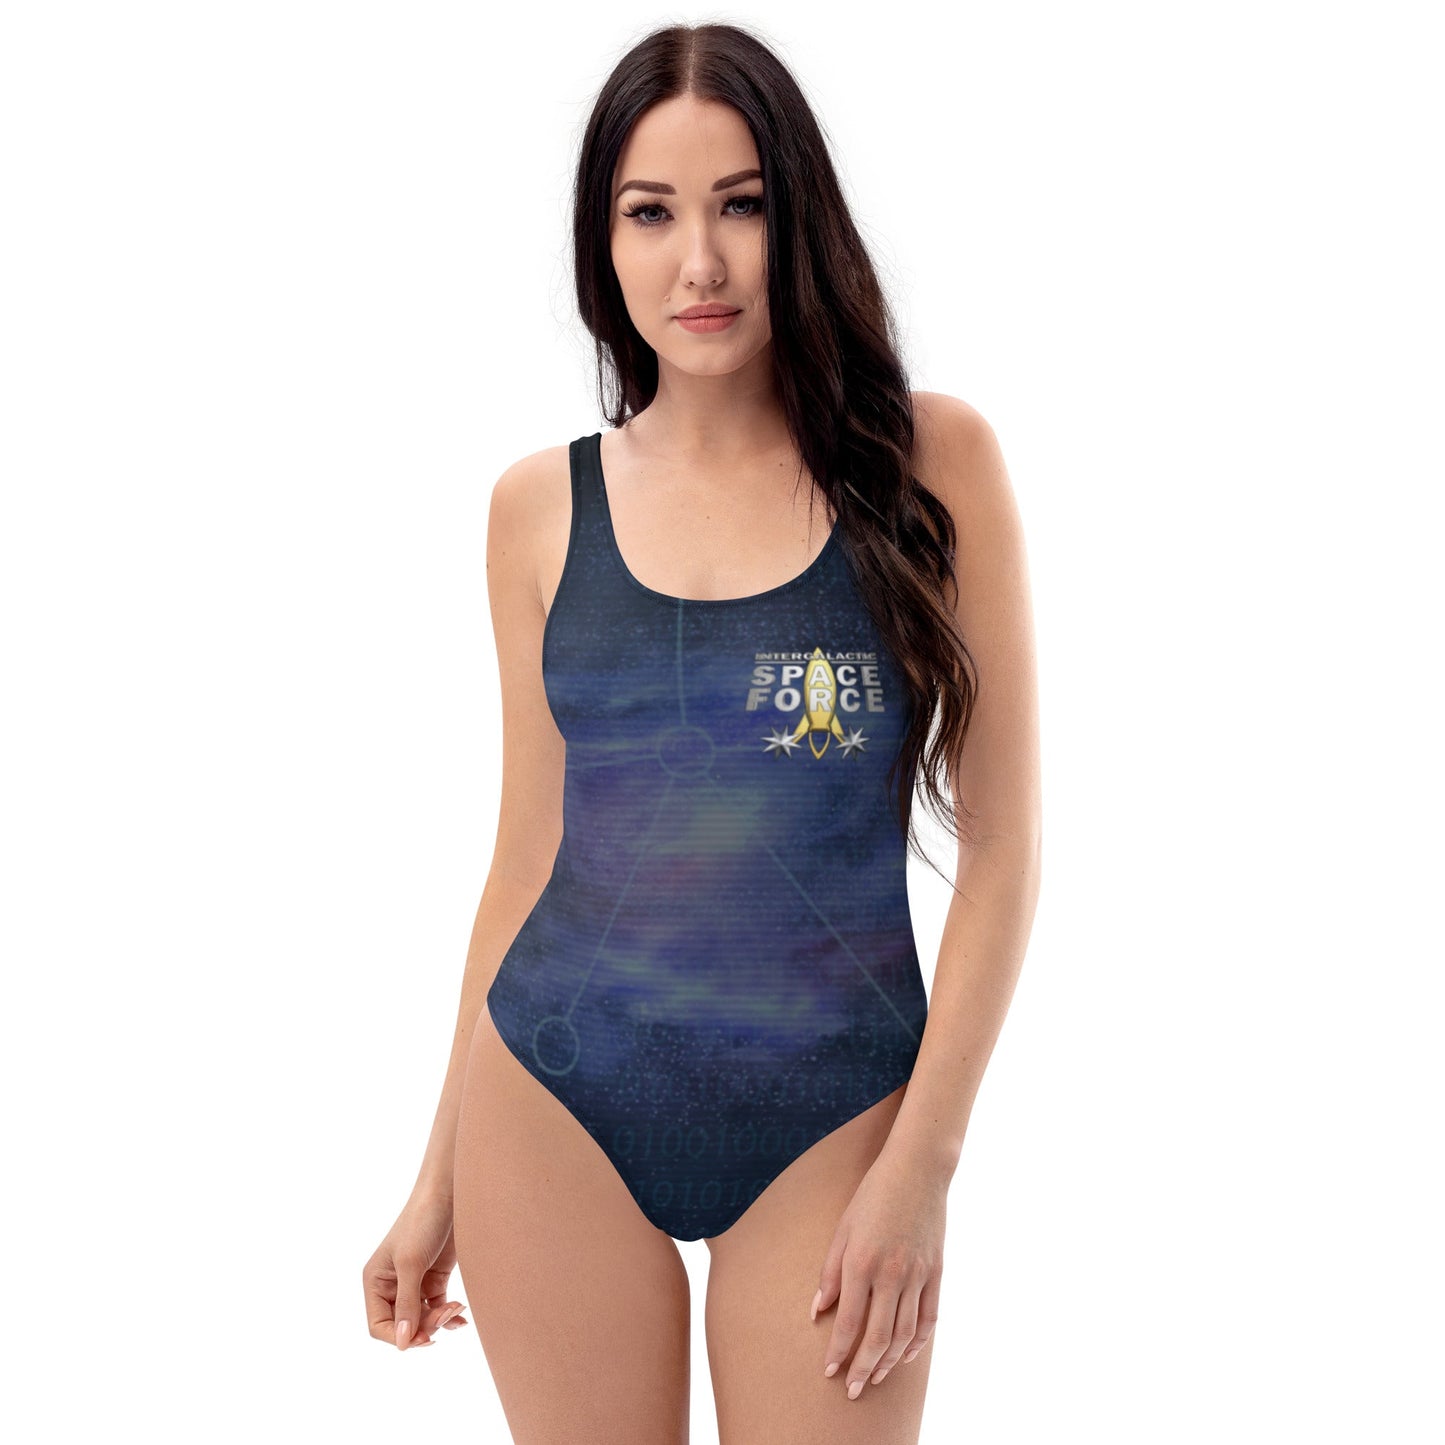 Women's One-Piece Swimsuit | Intergalactic Space Force - Spectral Ink Shop - Swimwear -9308089_9014